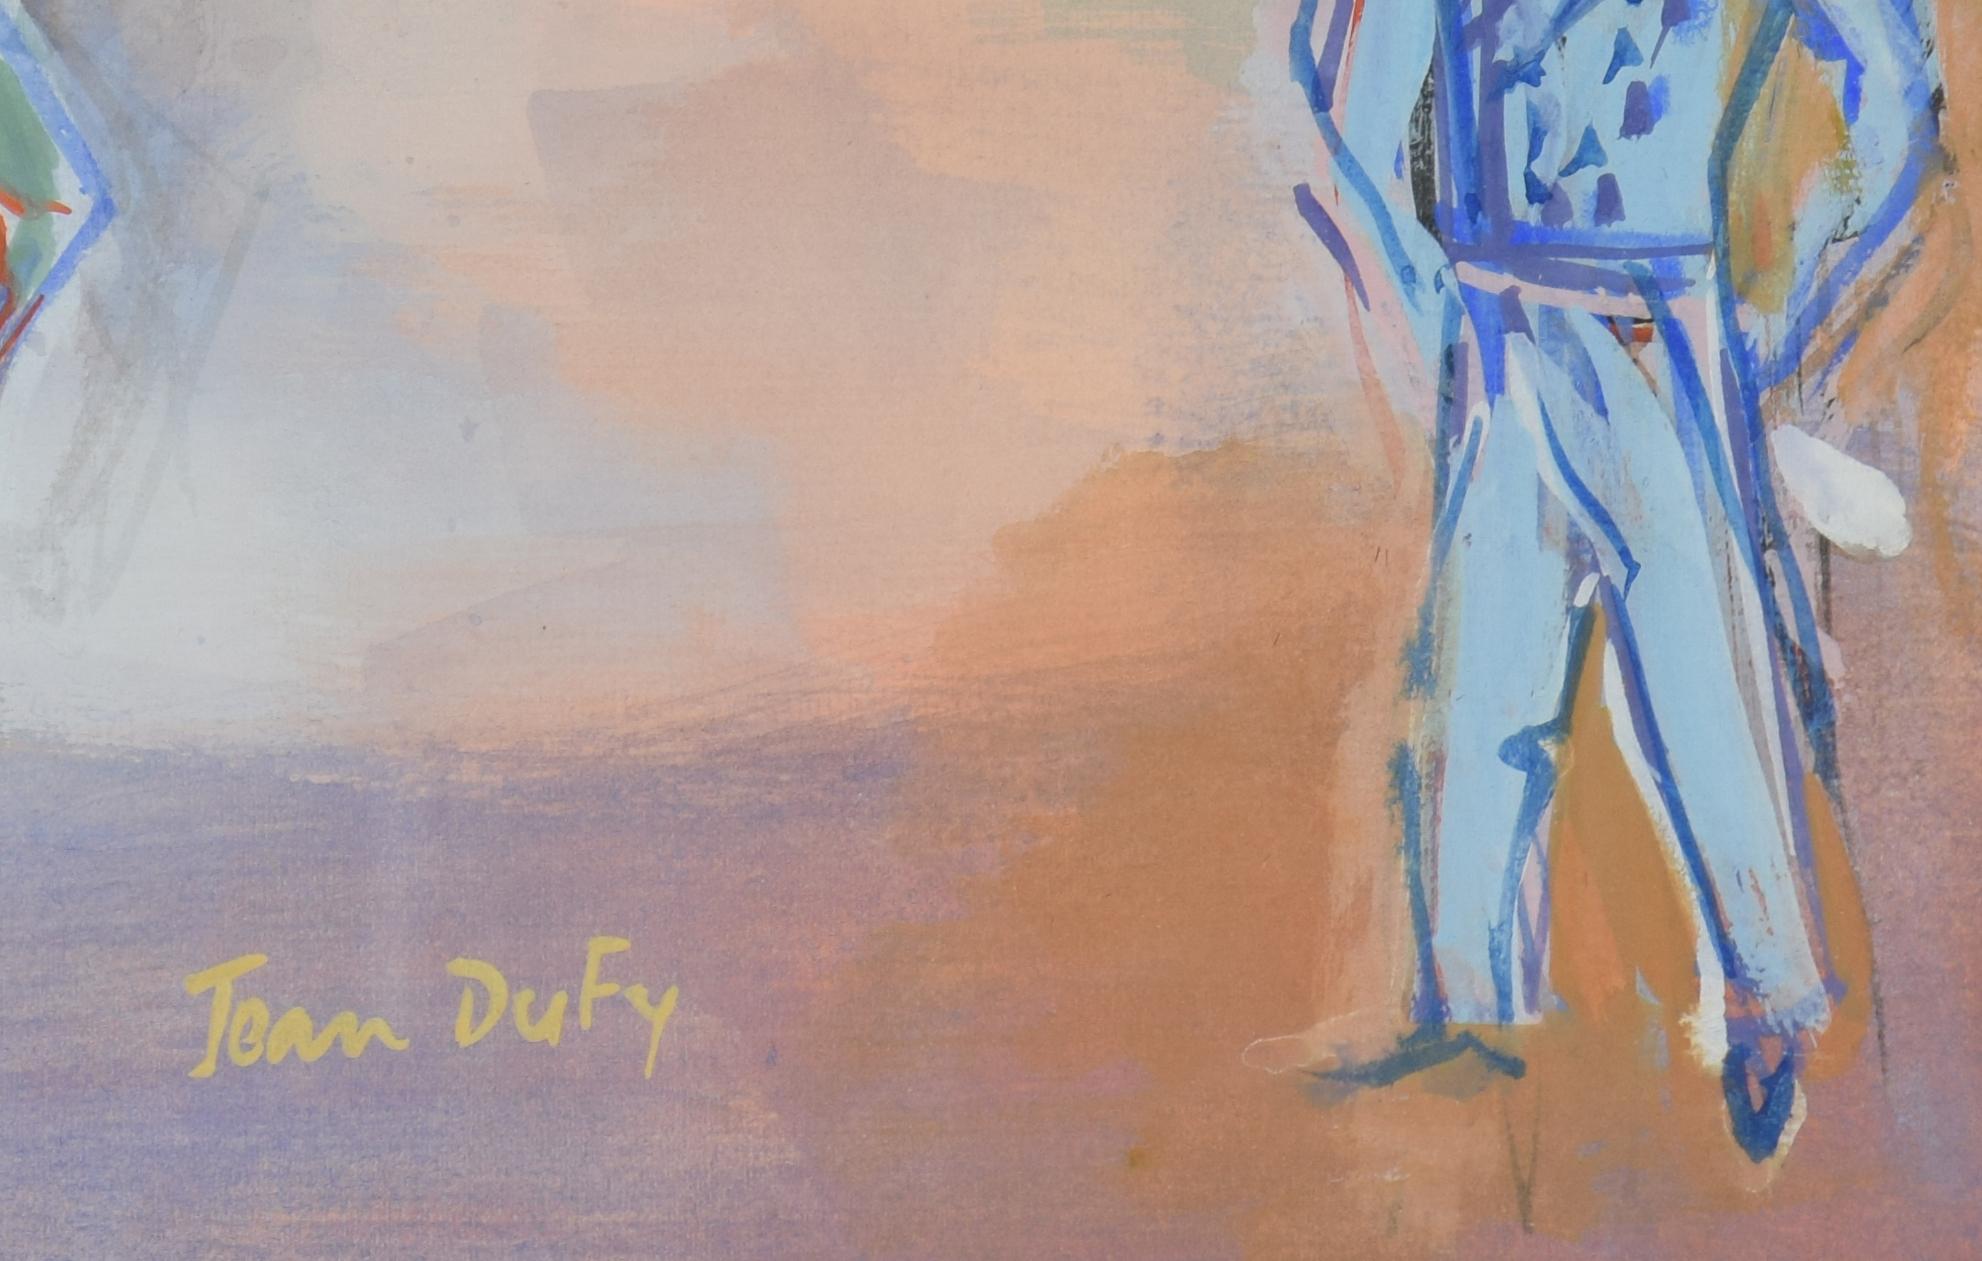 Parade Mexicaine von Jean Dufy (1888-1964)

Gouache auf Ingres-Papier
45.1 x 55,6 cm (17³/₄ x 21⁷/₈ Zoll)
Signiert Jean Dufy unten in der Mitte
Ausgeführt ca. 1948-1950

Provenienz
Galerie Käte Perls, Paris/New York (unter dem Titel